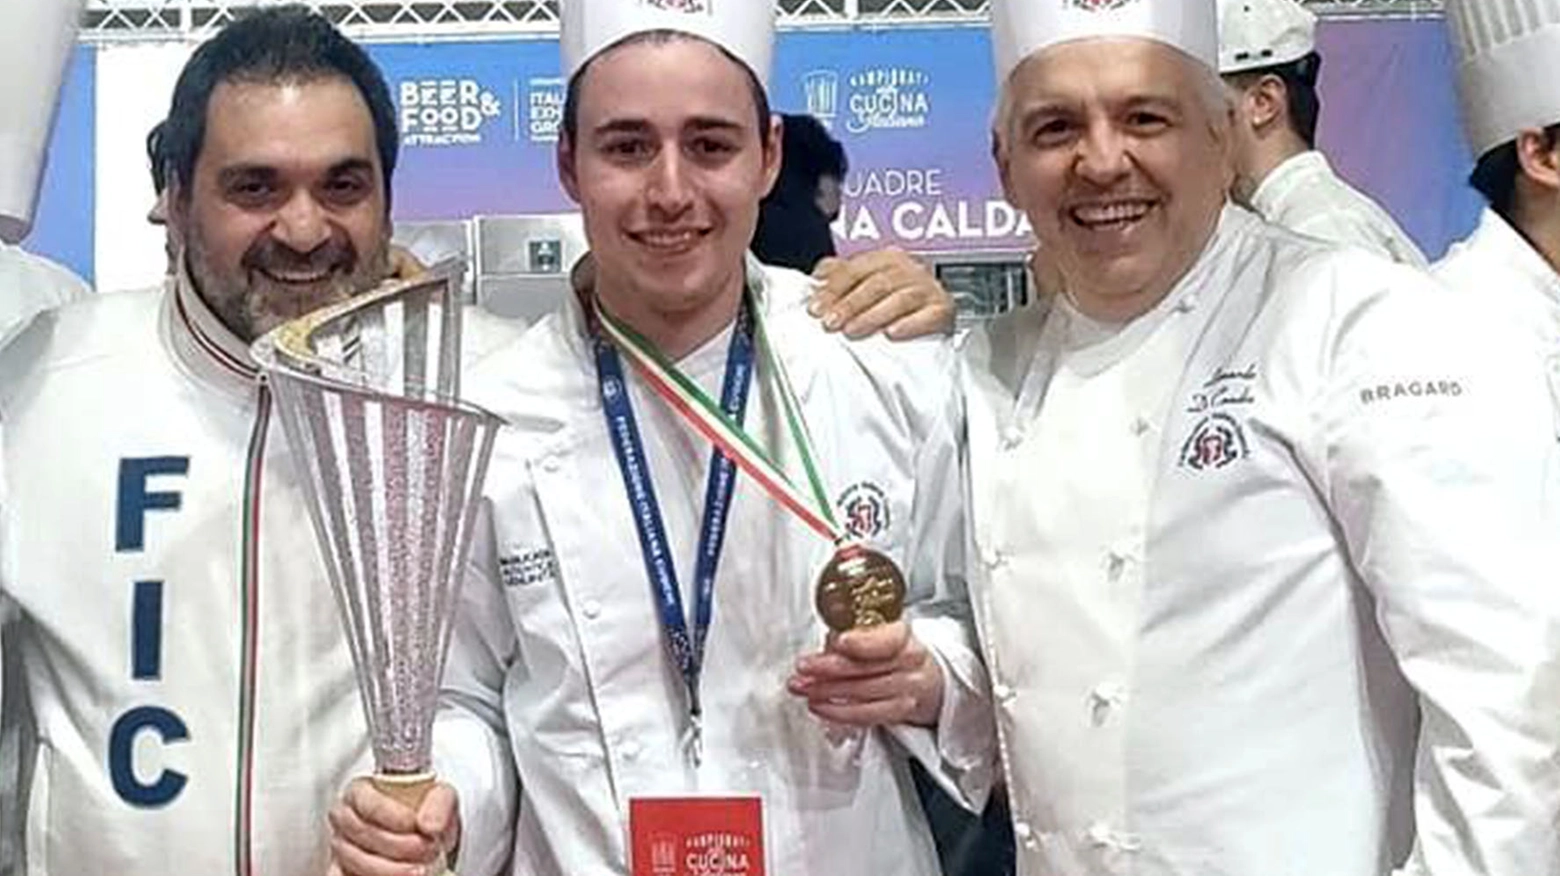 Drago, Monaci e De Candia, Campionati della Cucina Italiana